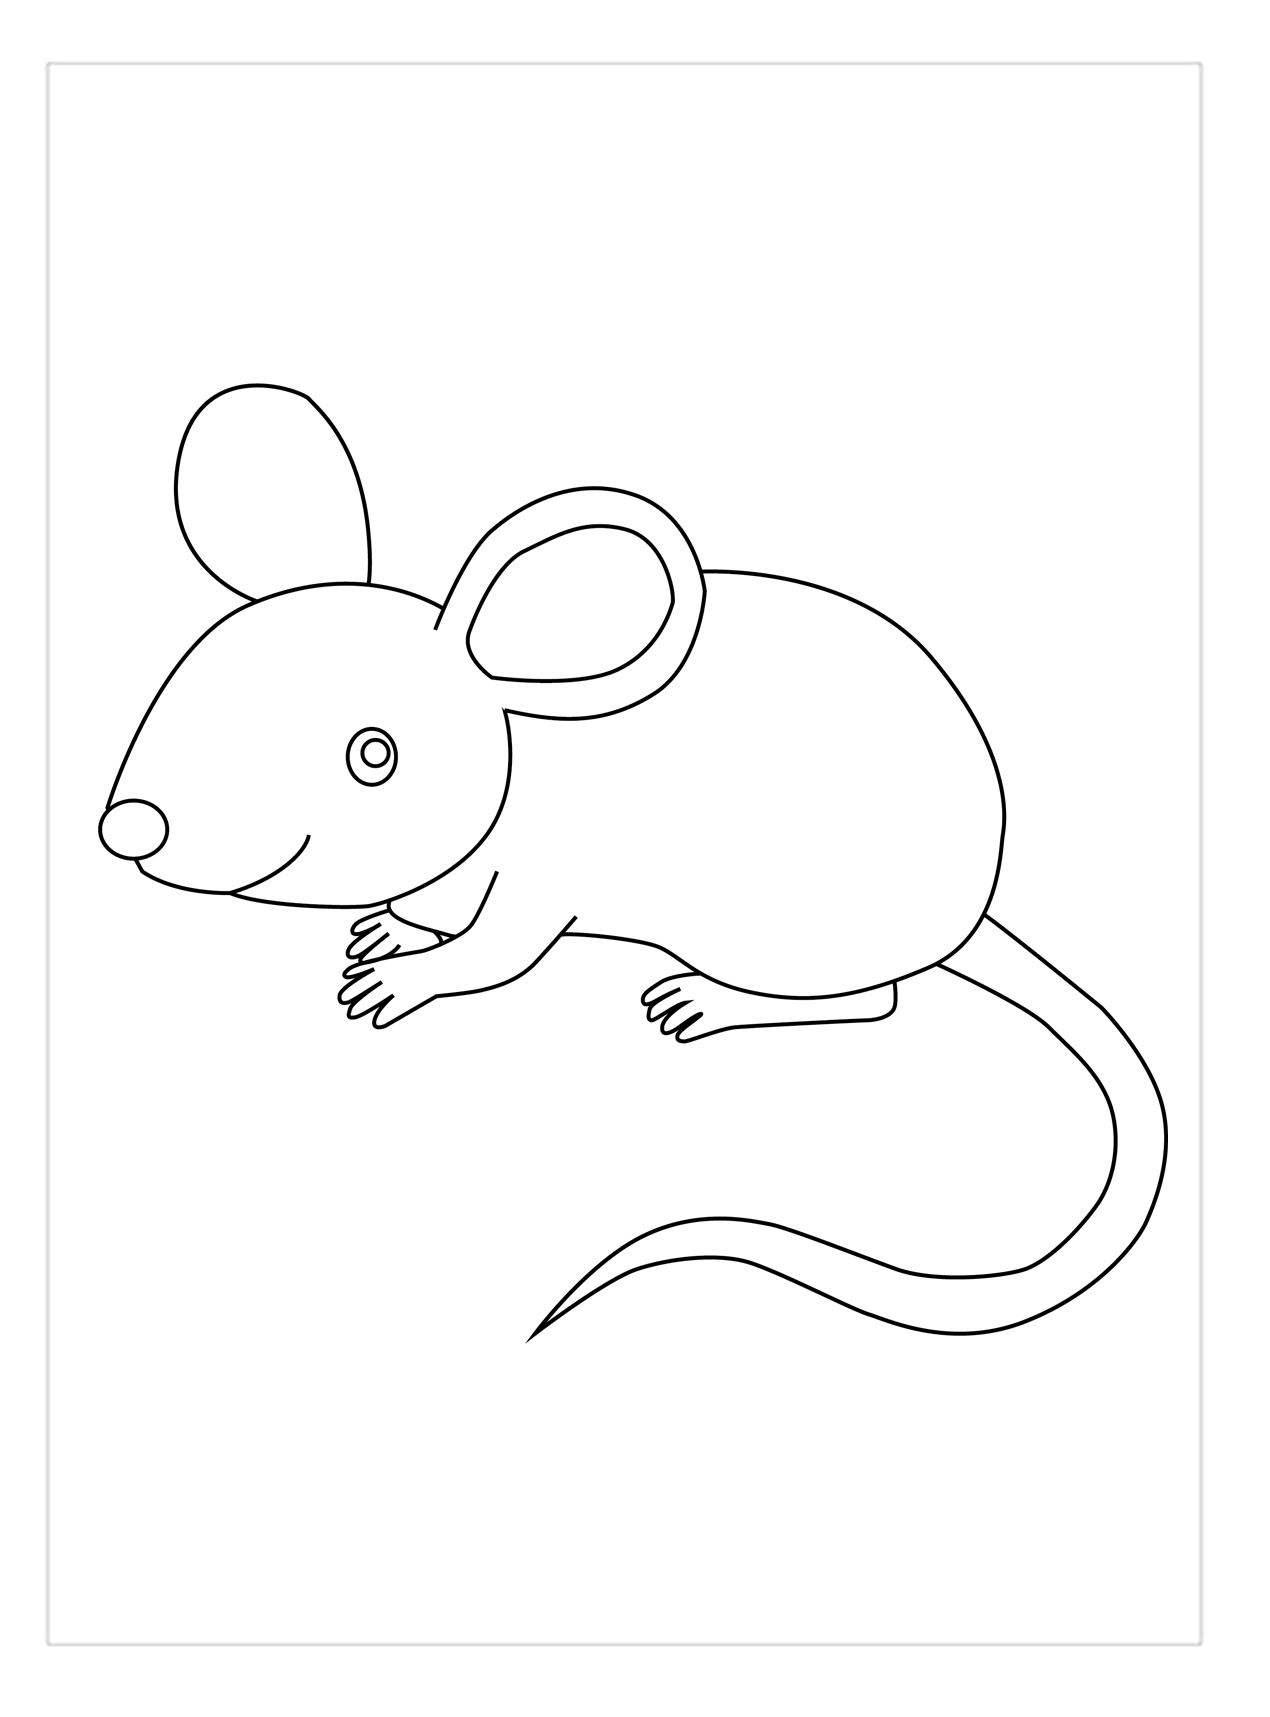 Tranh tô color con cái loài chuột rất đẹp, đơn giản